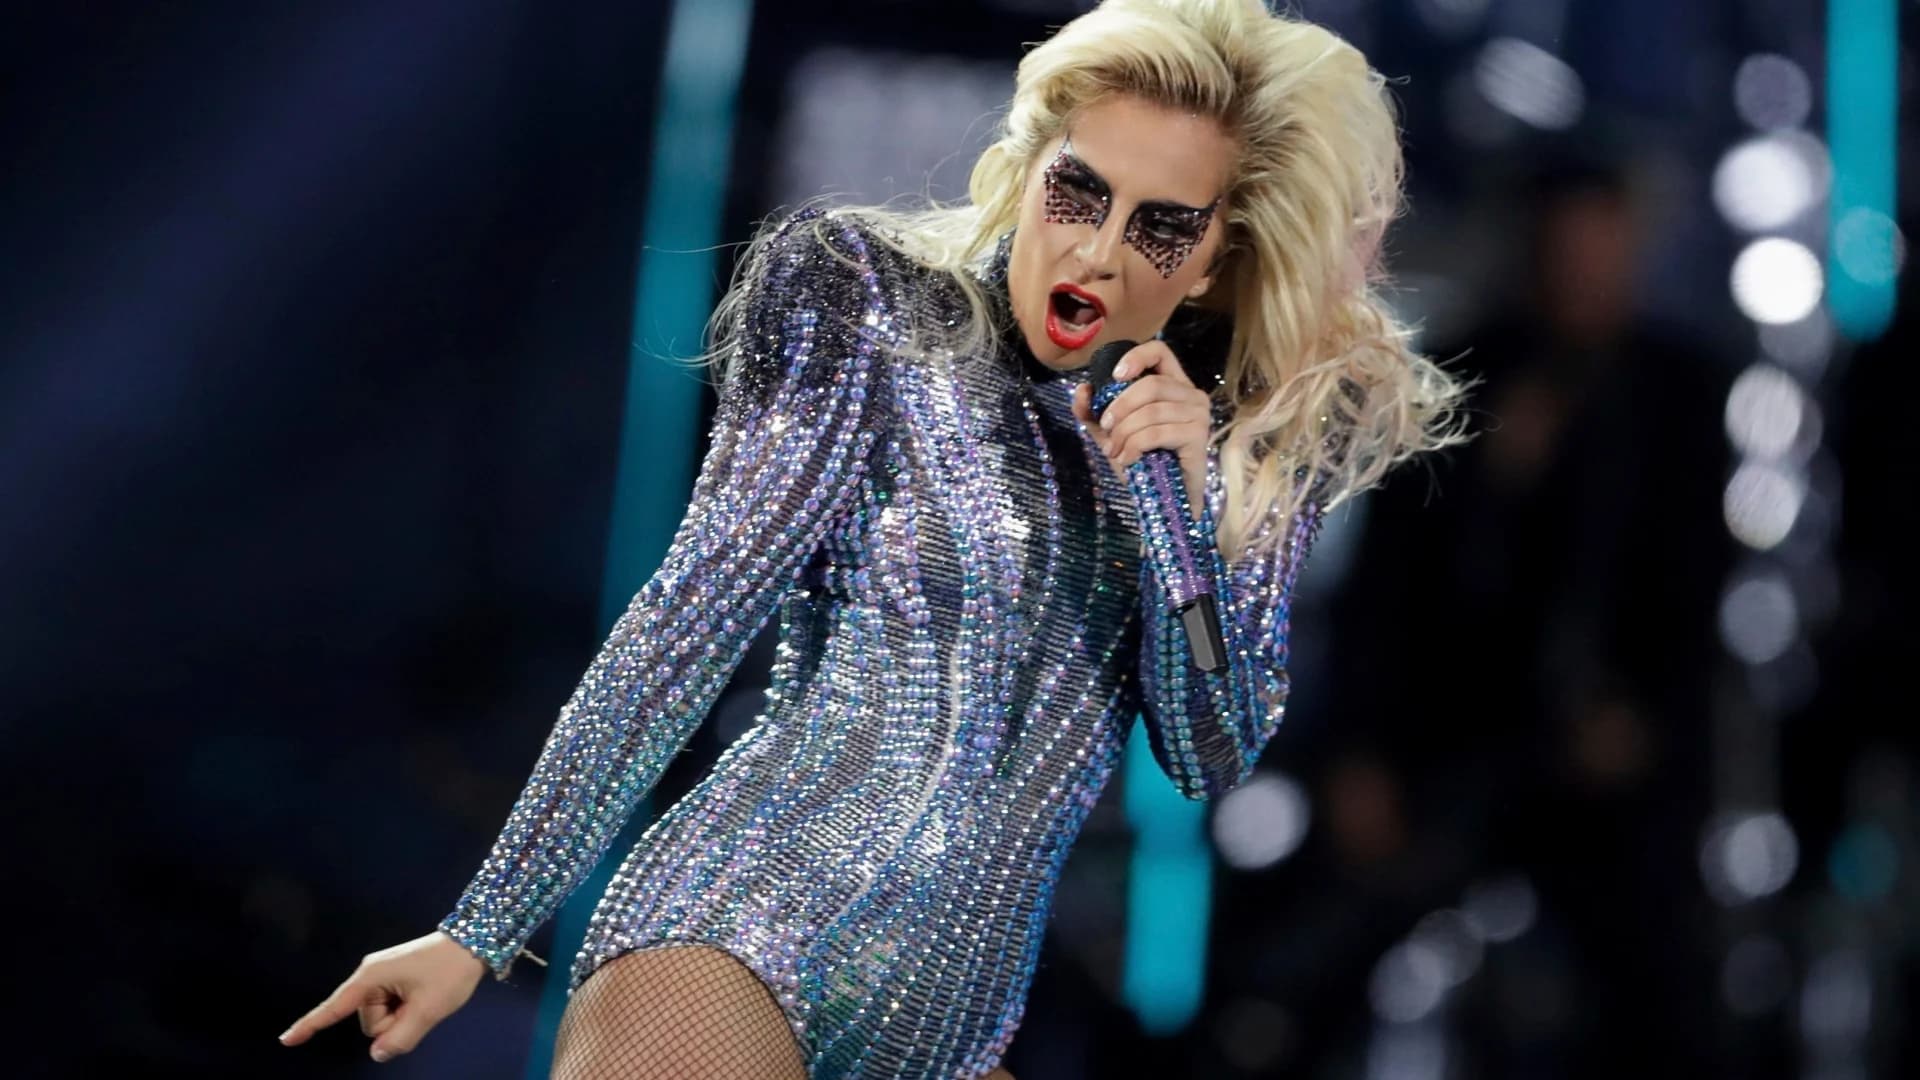 Lady Gaga to headline pre-Super Bowl concert in Miami